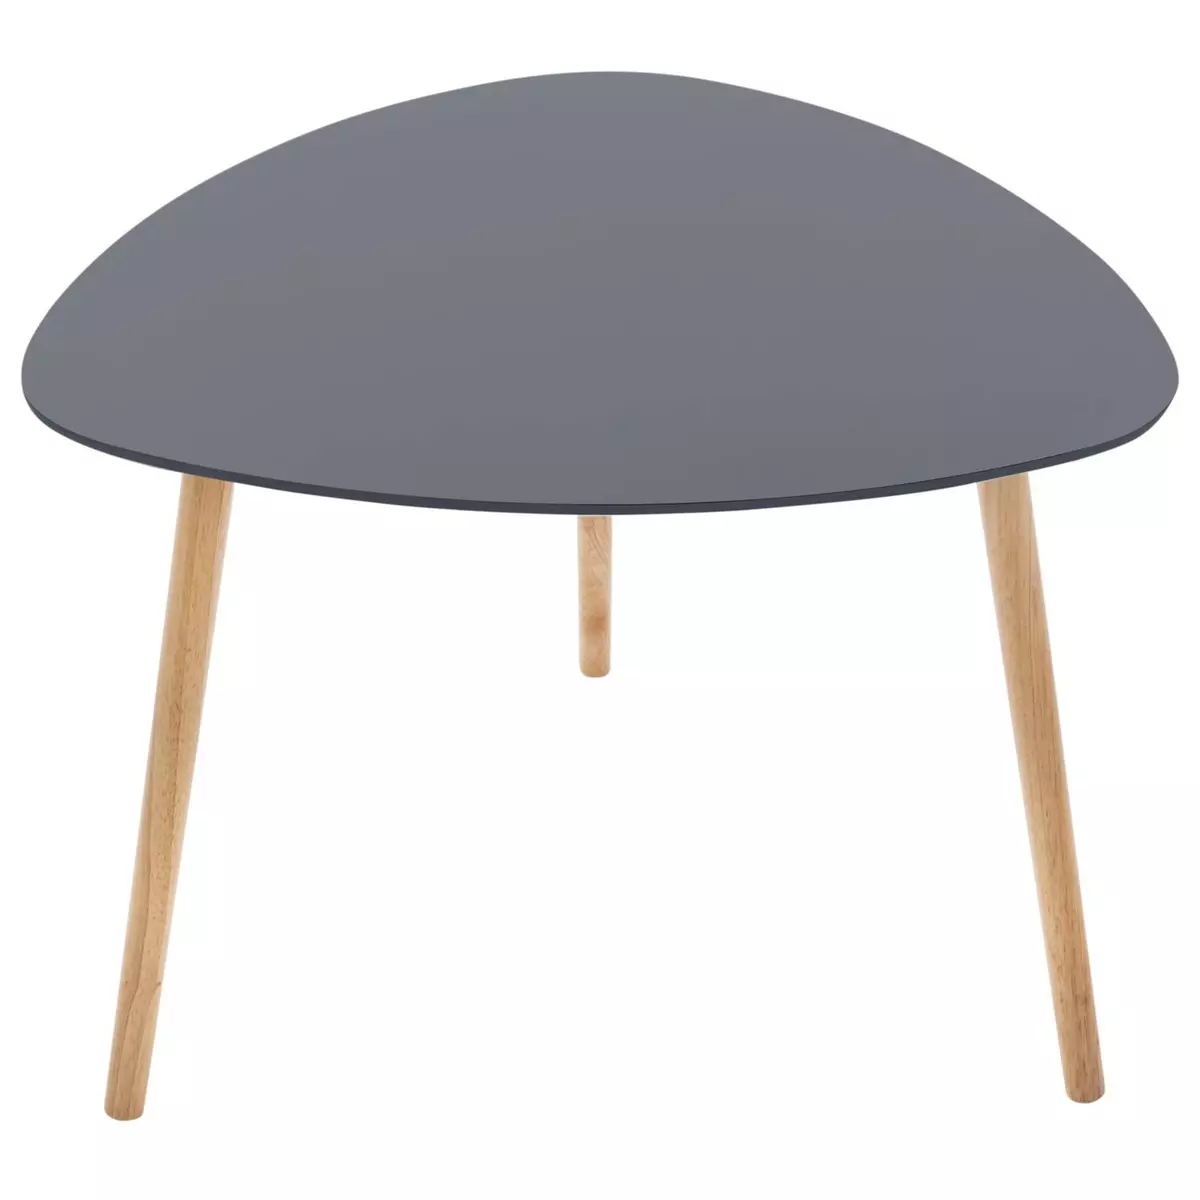 ATMOSPHERA Table d'appoint design Mileo - Diam. 60 x H. 45 cm - Gris foncé